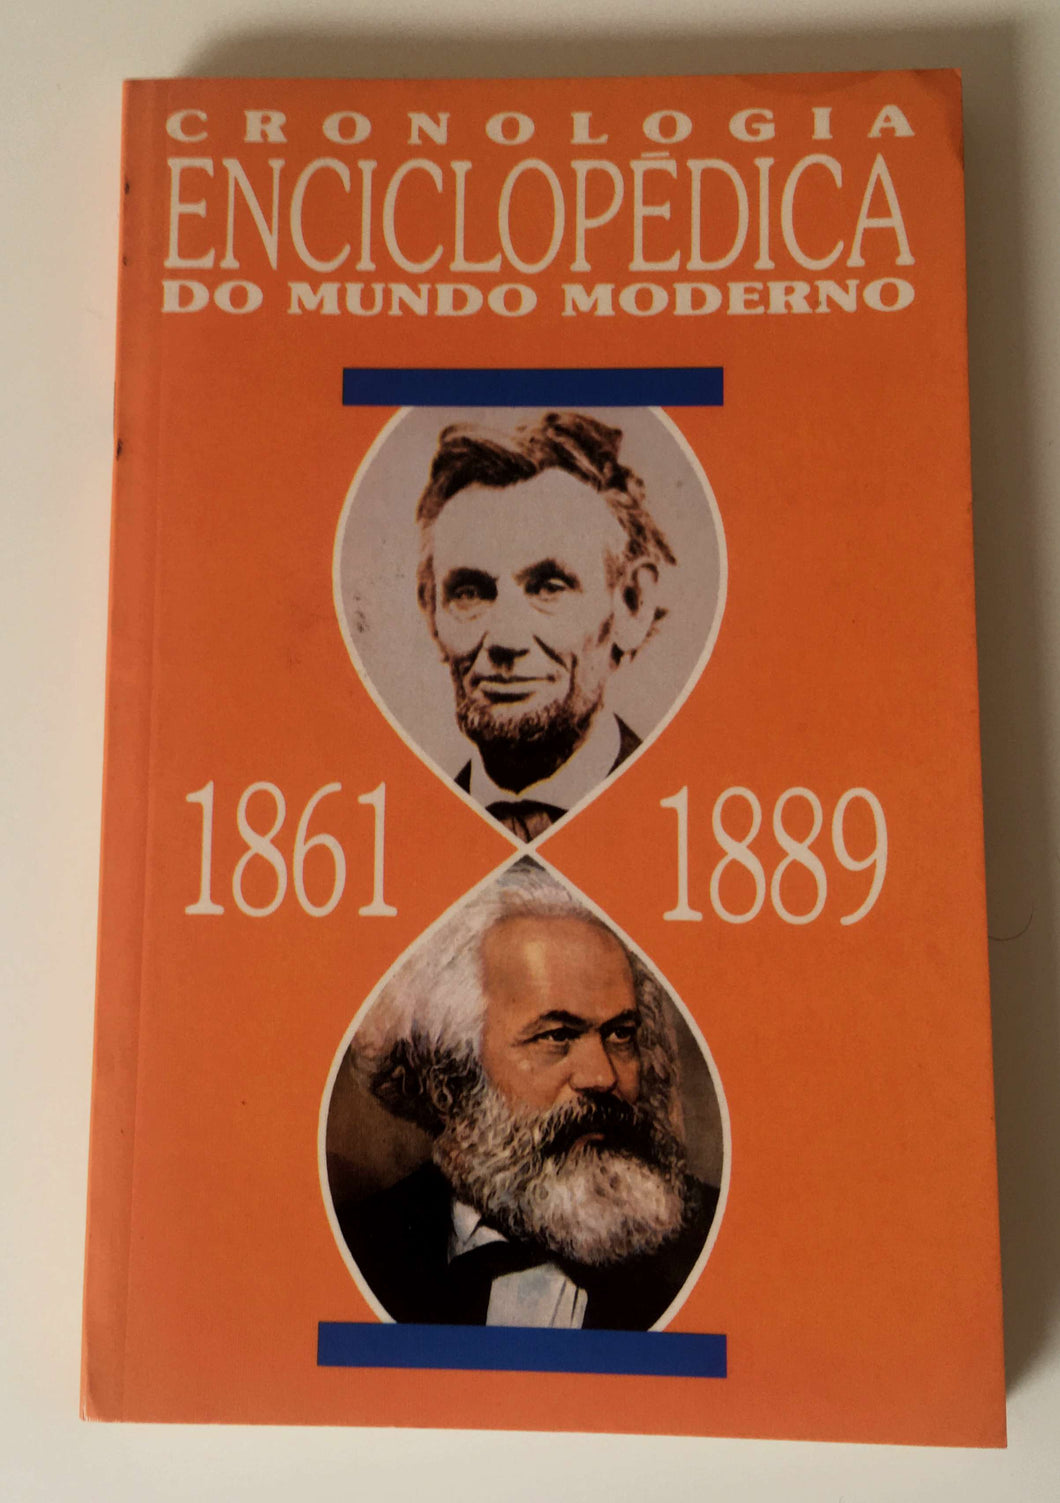 Cronologia Enciclopédica do Mundo Moderno (1861-1889)